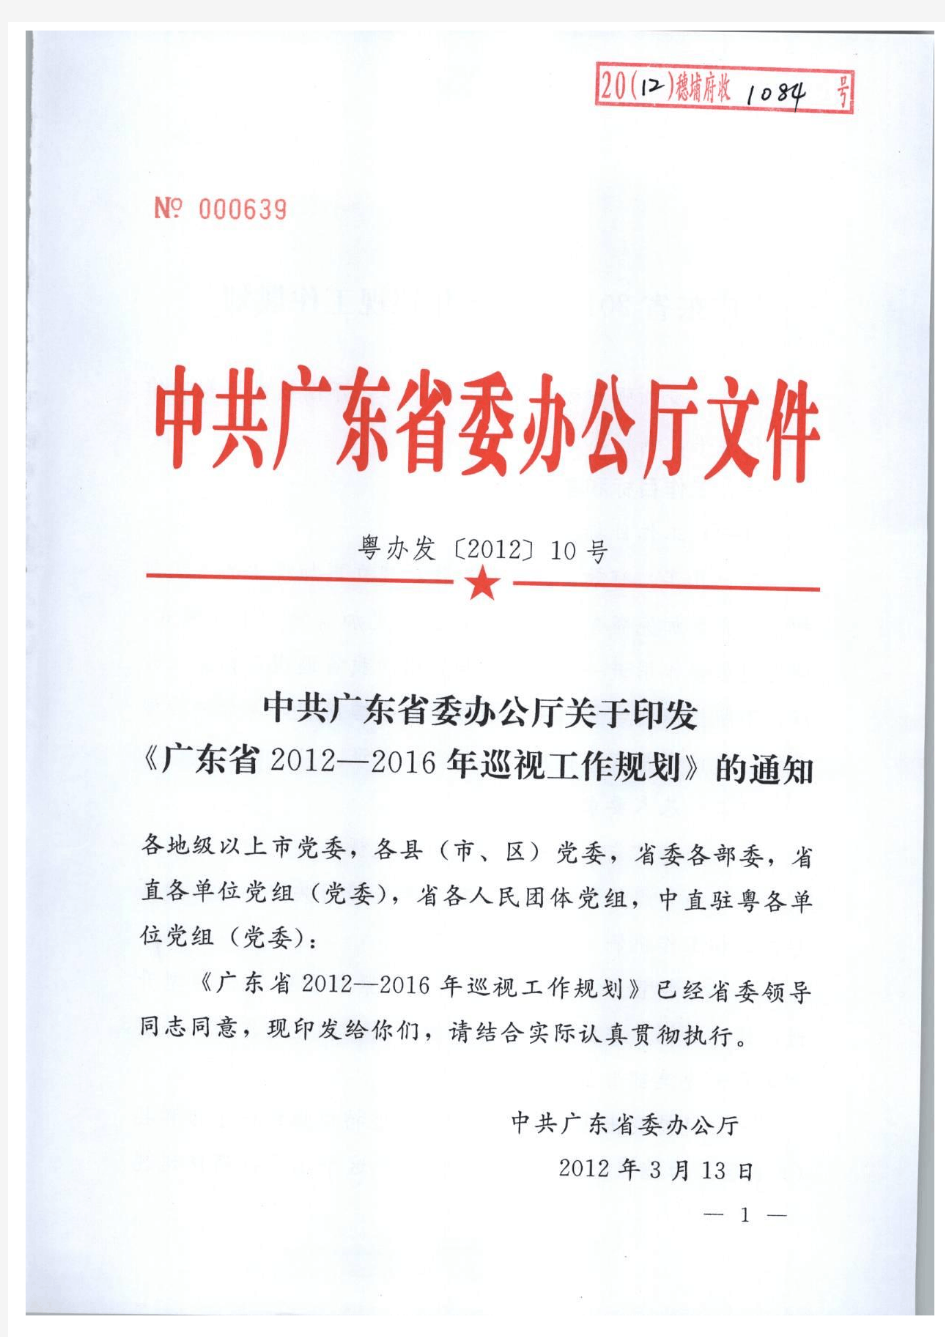 中共广东省委办公厅关于印发《广东省2012-2016年巡视工作规划》的通知